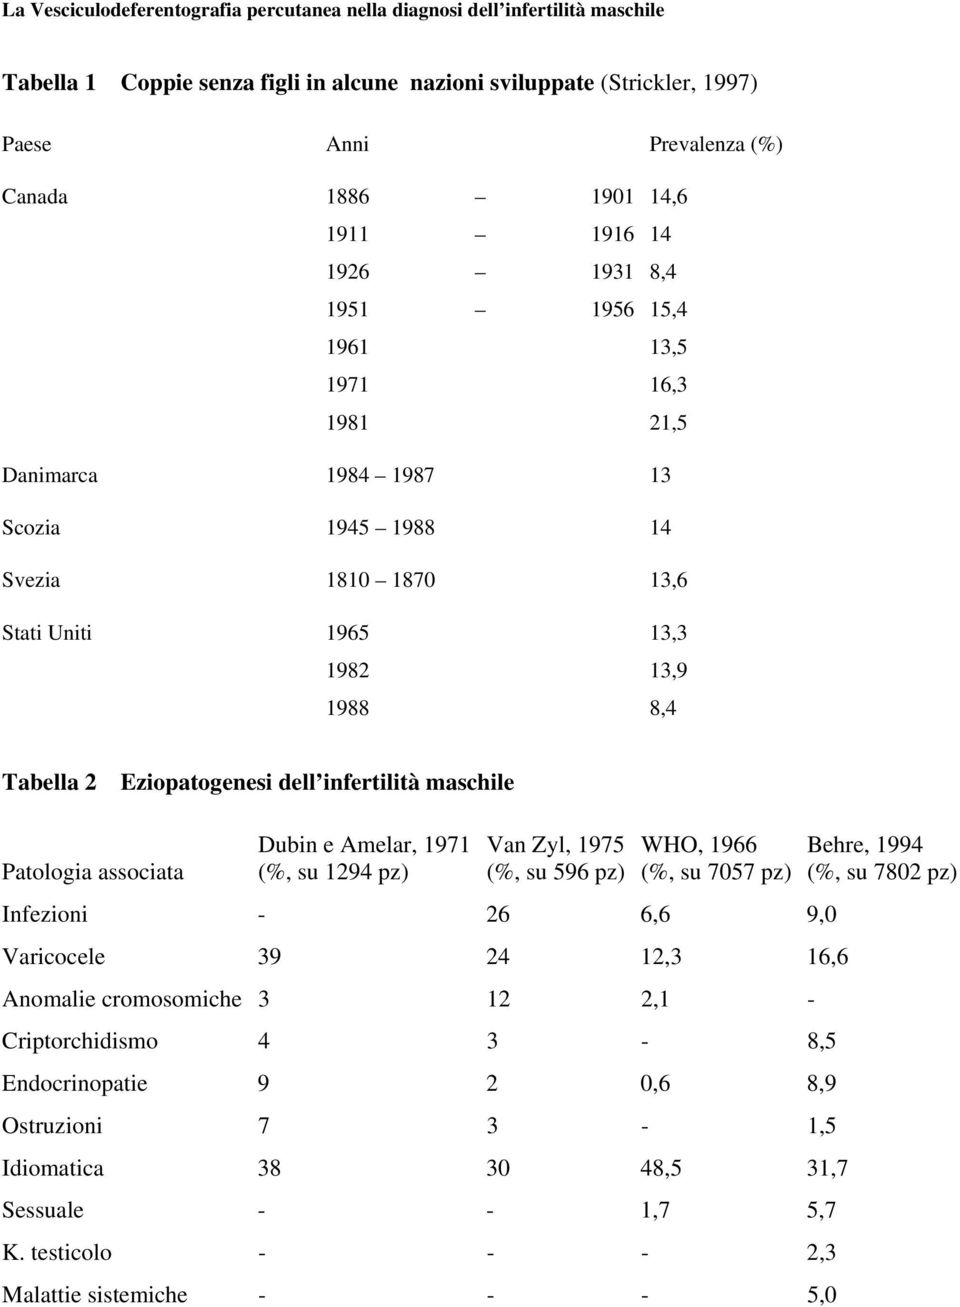 Dubin e Amelar, 1971 (%, su 1294 pz) Van Zyl, 1975 (%, su 596 pz) WHO, 1966 (%, su 7057 pz) Infezioni - 26 6,6 9,0 Varicocele 39 24 12,3 16,6 Anomalie cromosomiche 3 12 2,1 -